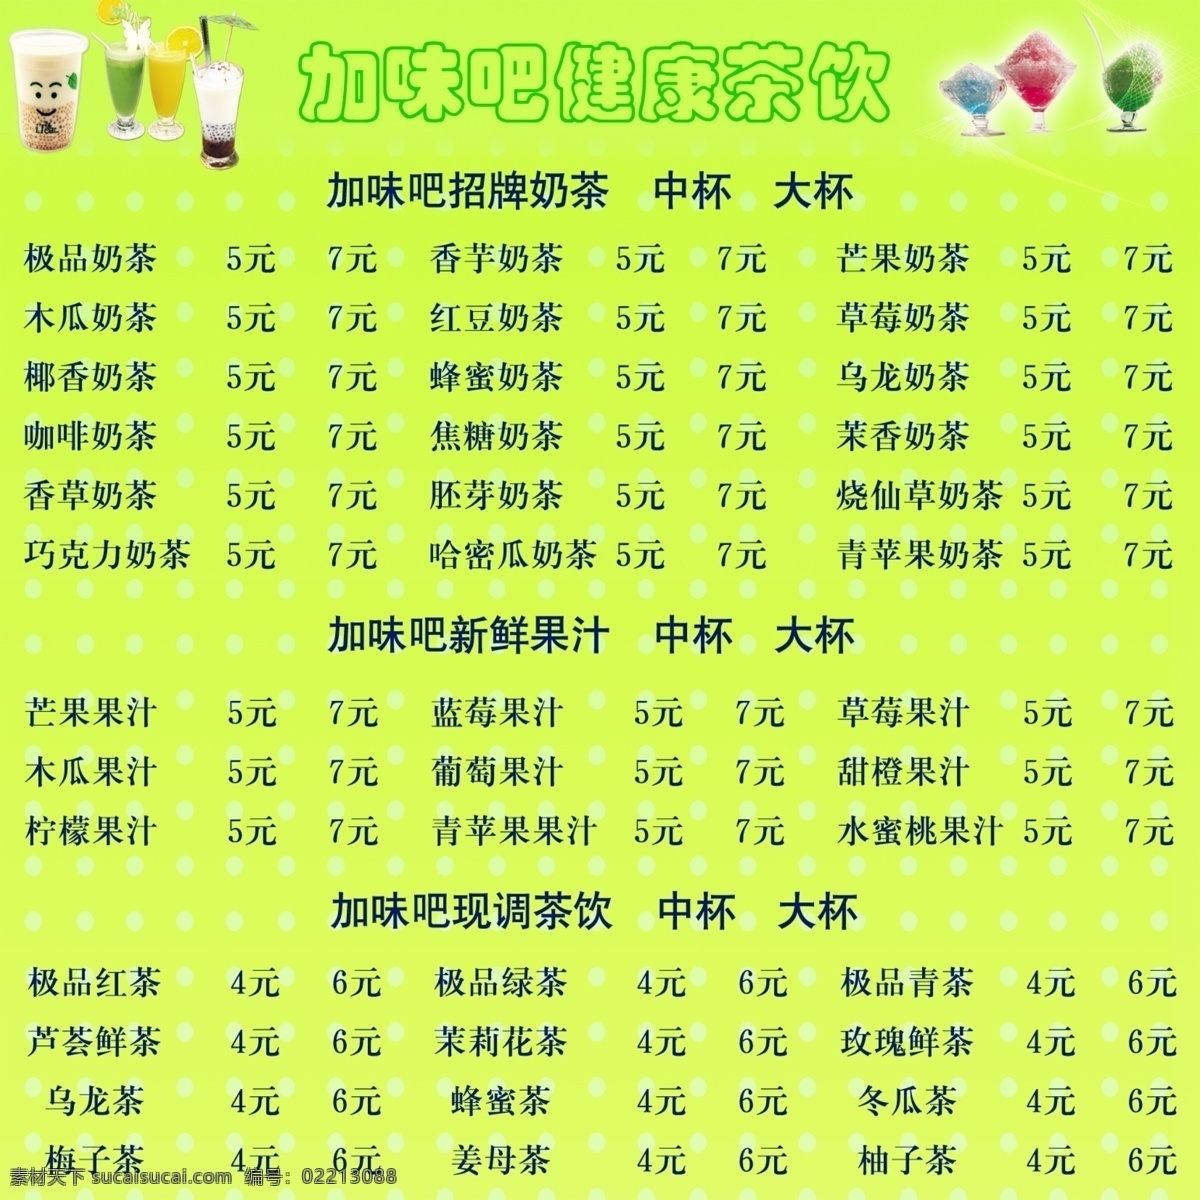 菜单菜谱 广告设计模板 价目表 奶茶价格表 源文件 台湾 珍珠 奶茶 模板下载 台湾珍珠奶茶 矢量图 日常生活